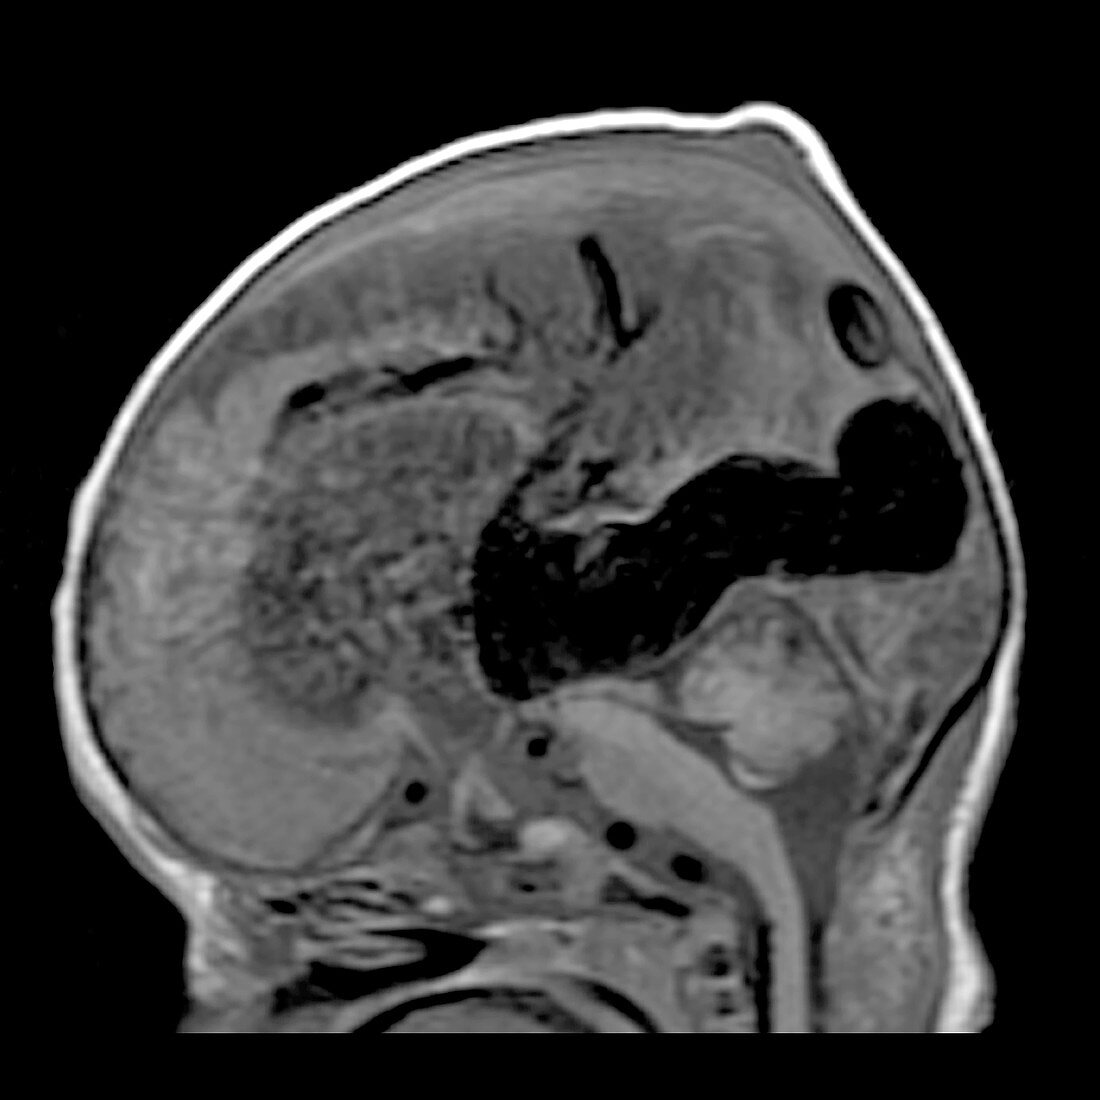 Vein of Galen Malformation, MRI